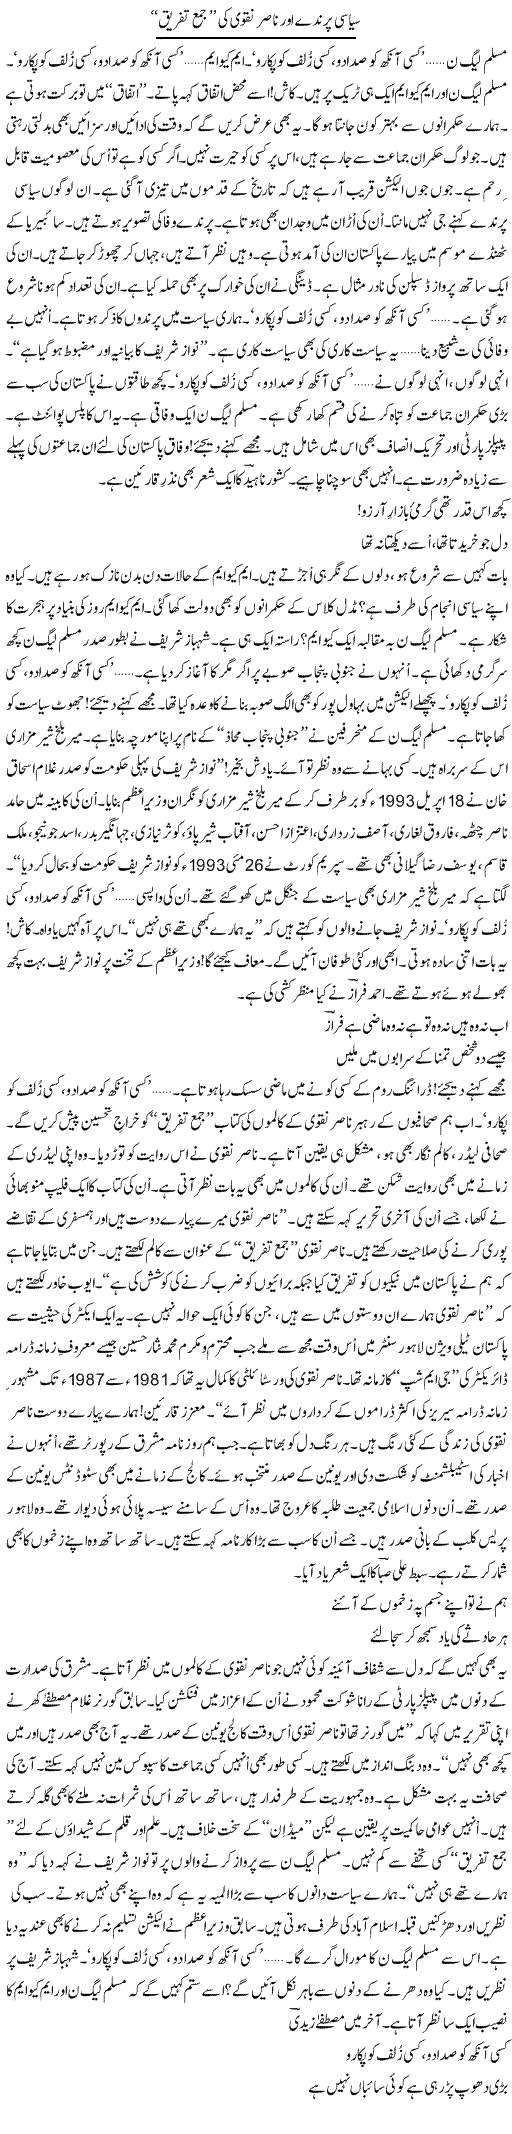 Siyasi Parinday Aur Nasir Naqvi Ki Jama Tafreeq | Ejaz Hafeez Khan | Daily Urdu Columns